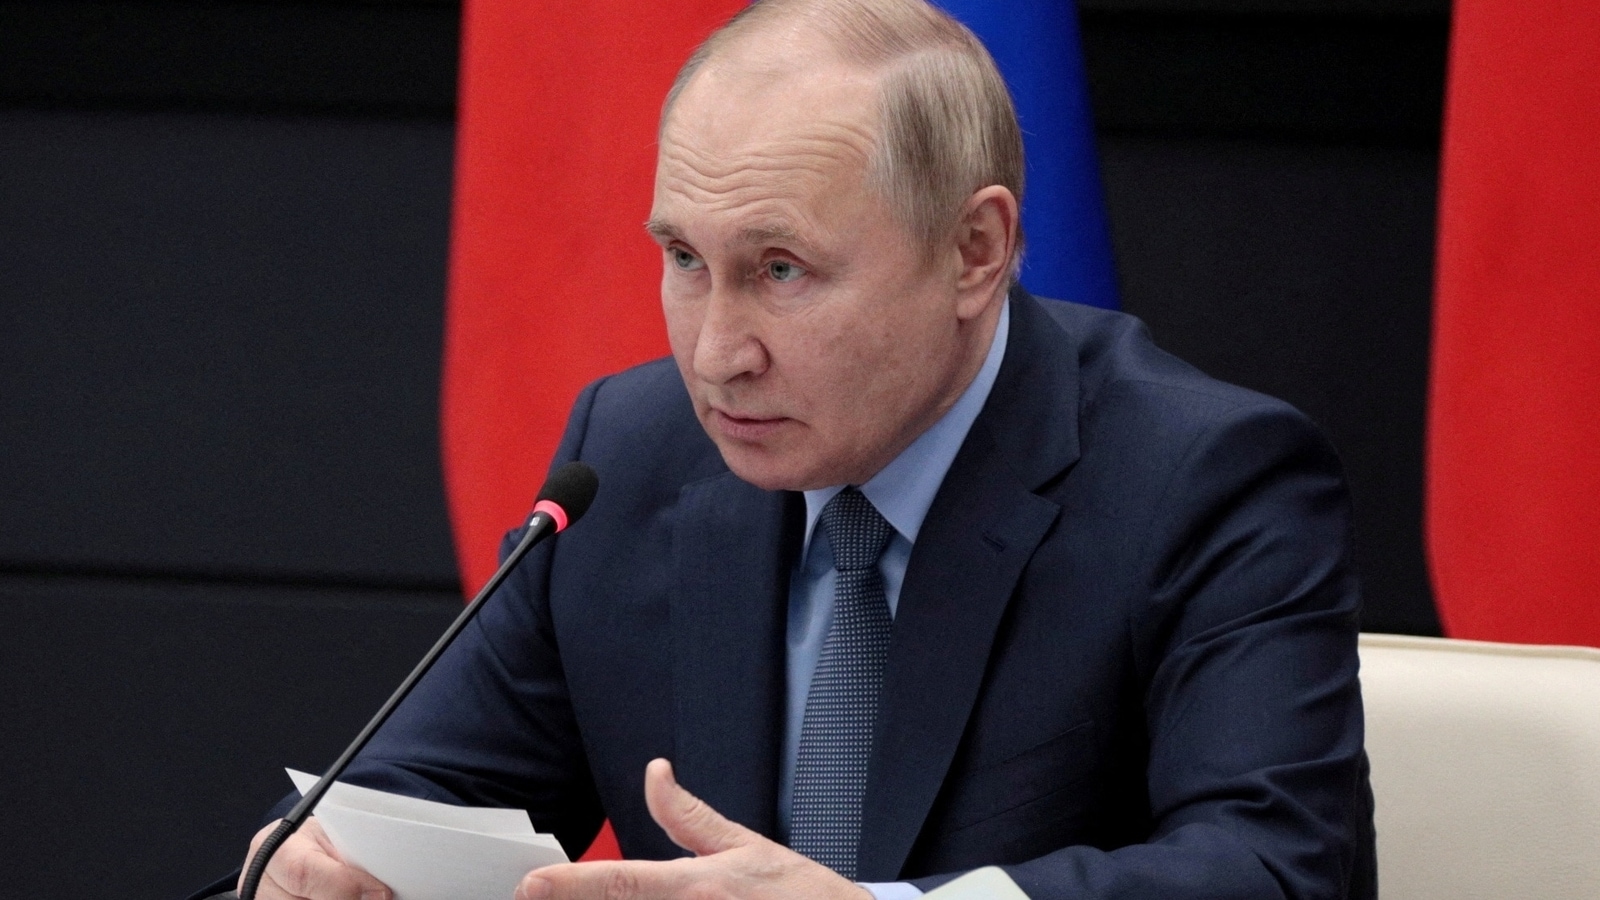 ‘We're again being threatened’: Vladimir Putin fumes over this huge Ukraine gain